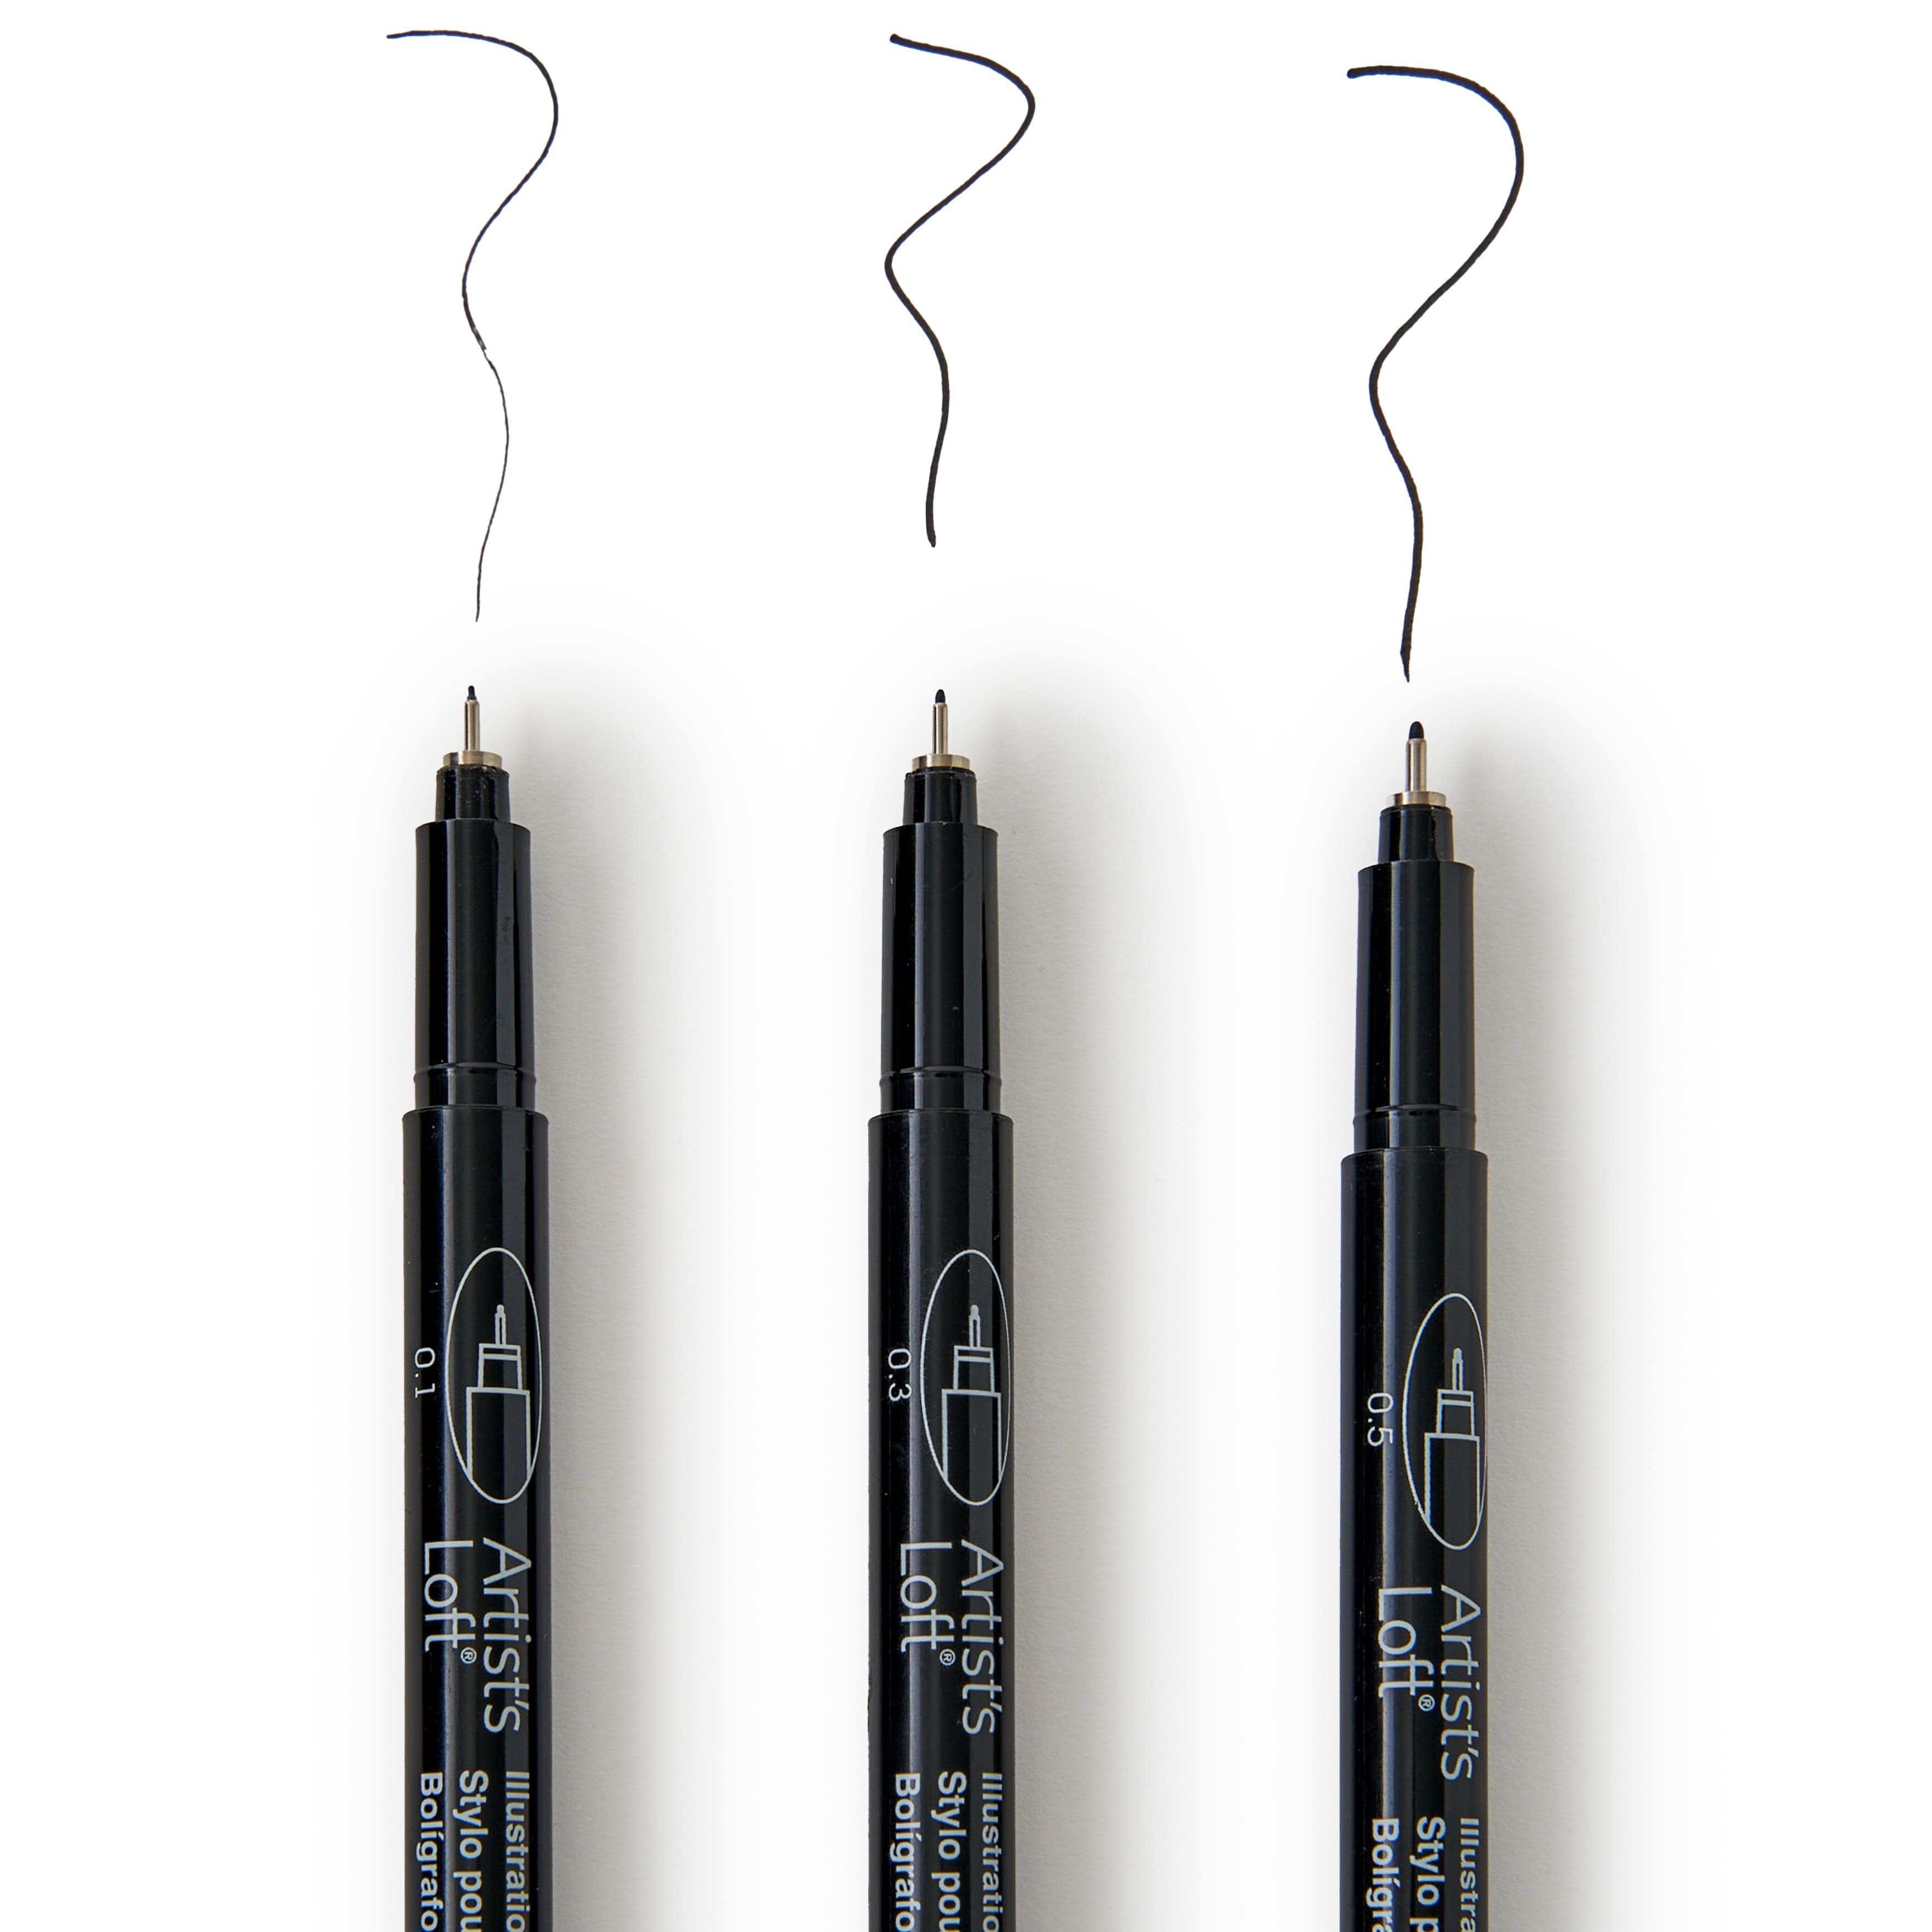 Artist's Loft Multi Tip Black Illustration Pen Set - Each